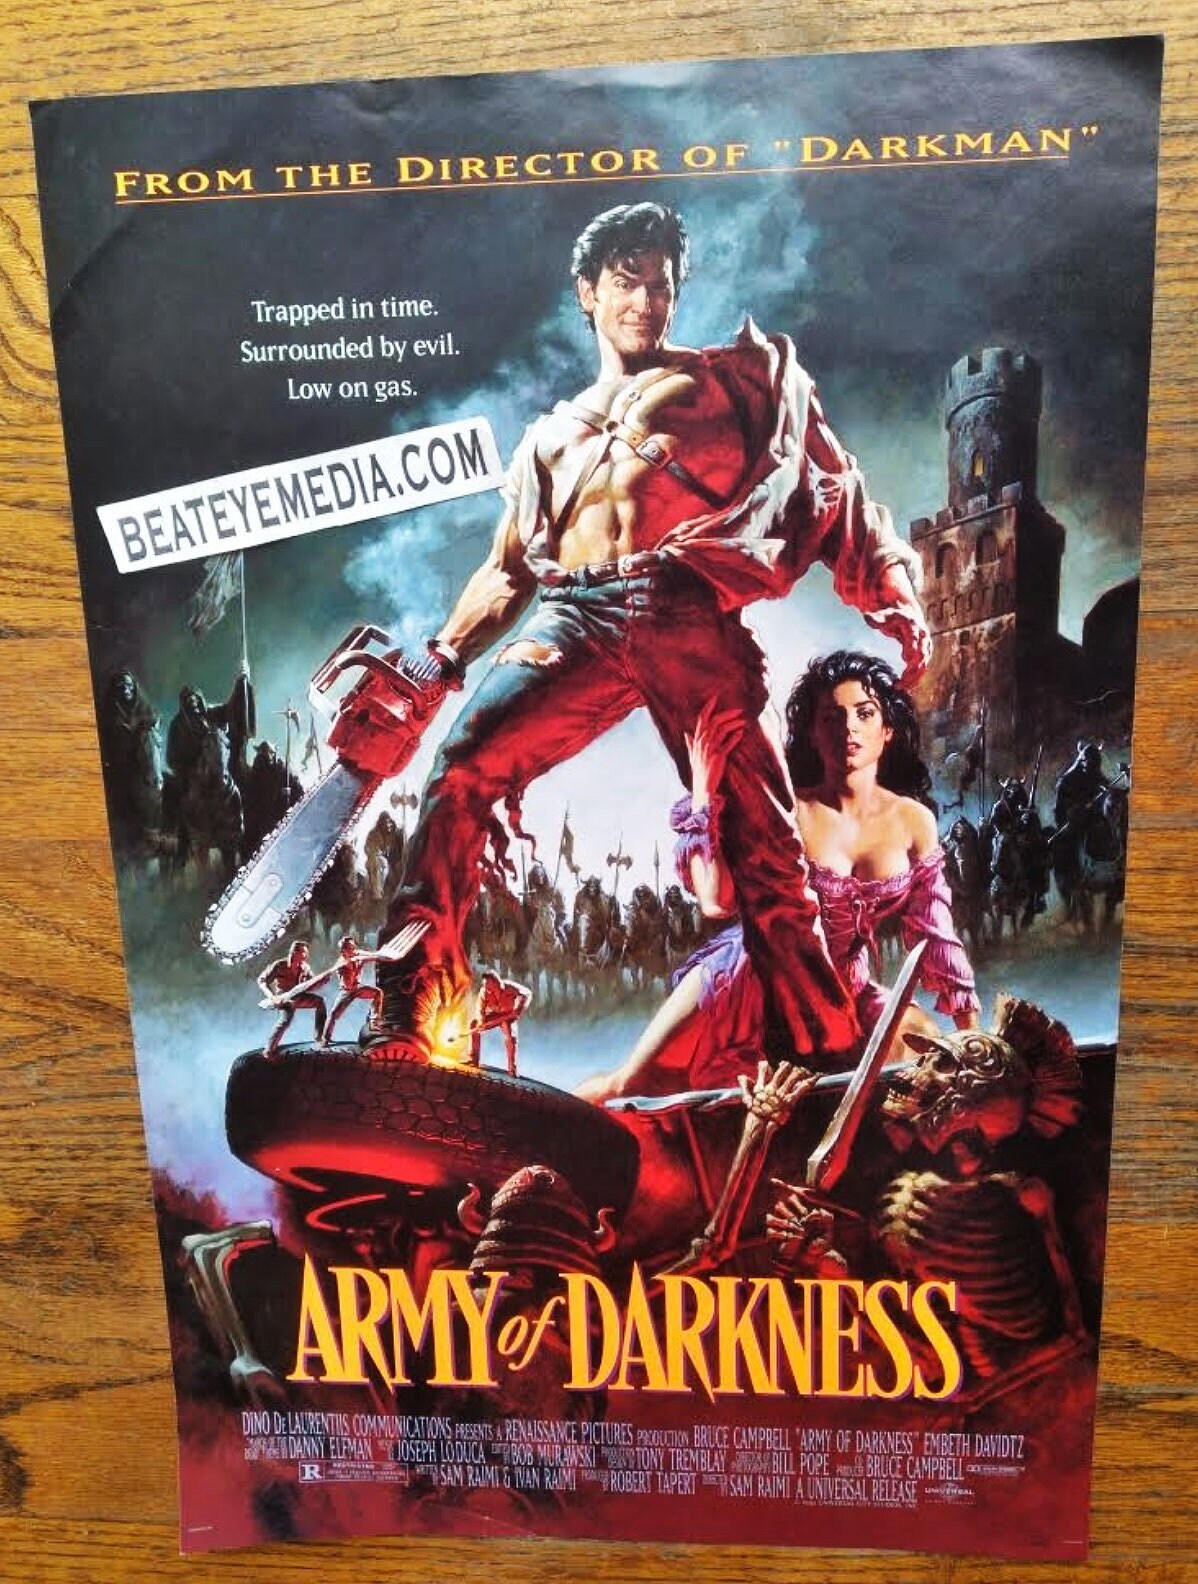 Evil Dead 2 e Steve Urkel Crossover para capa de VHS perfeita